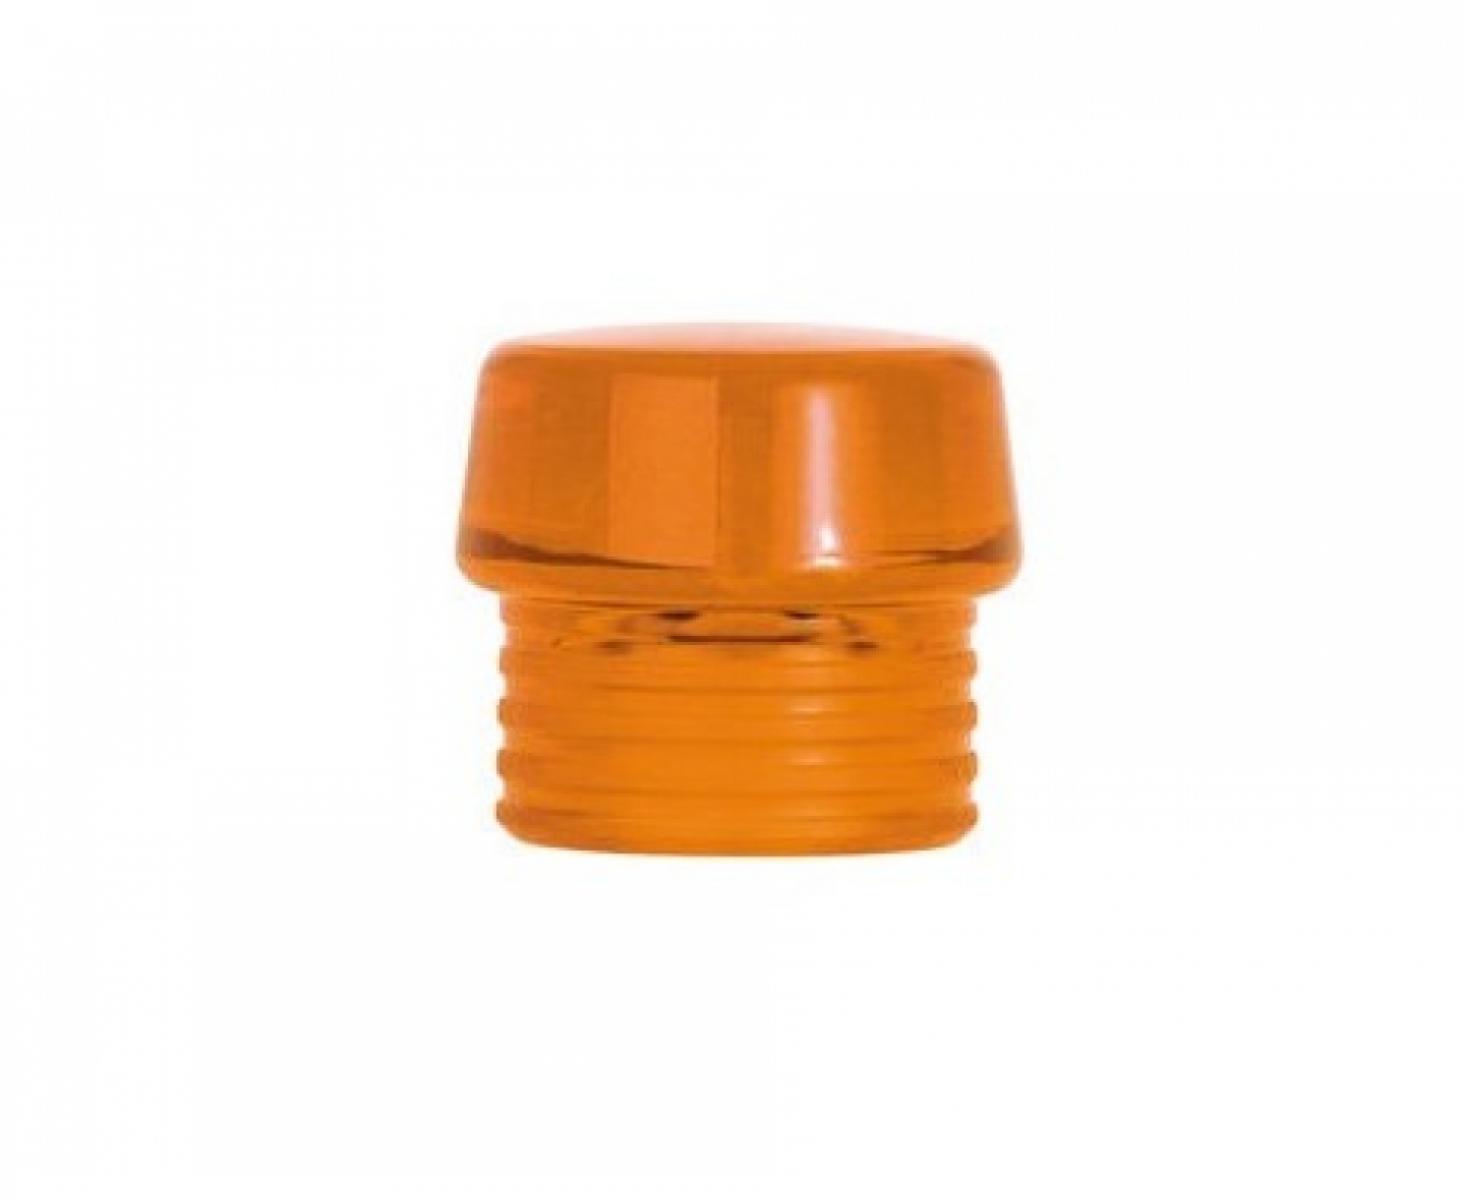 Головка оранжевая для молотка Wiha Safety 831-8 26618 из твердого ацетата целлюлозы